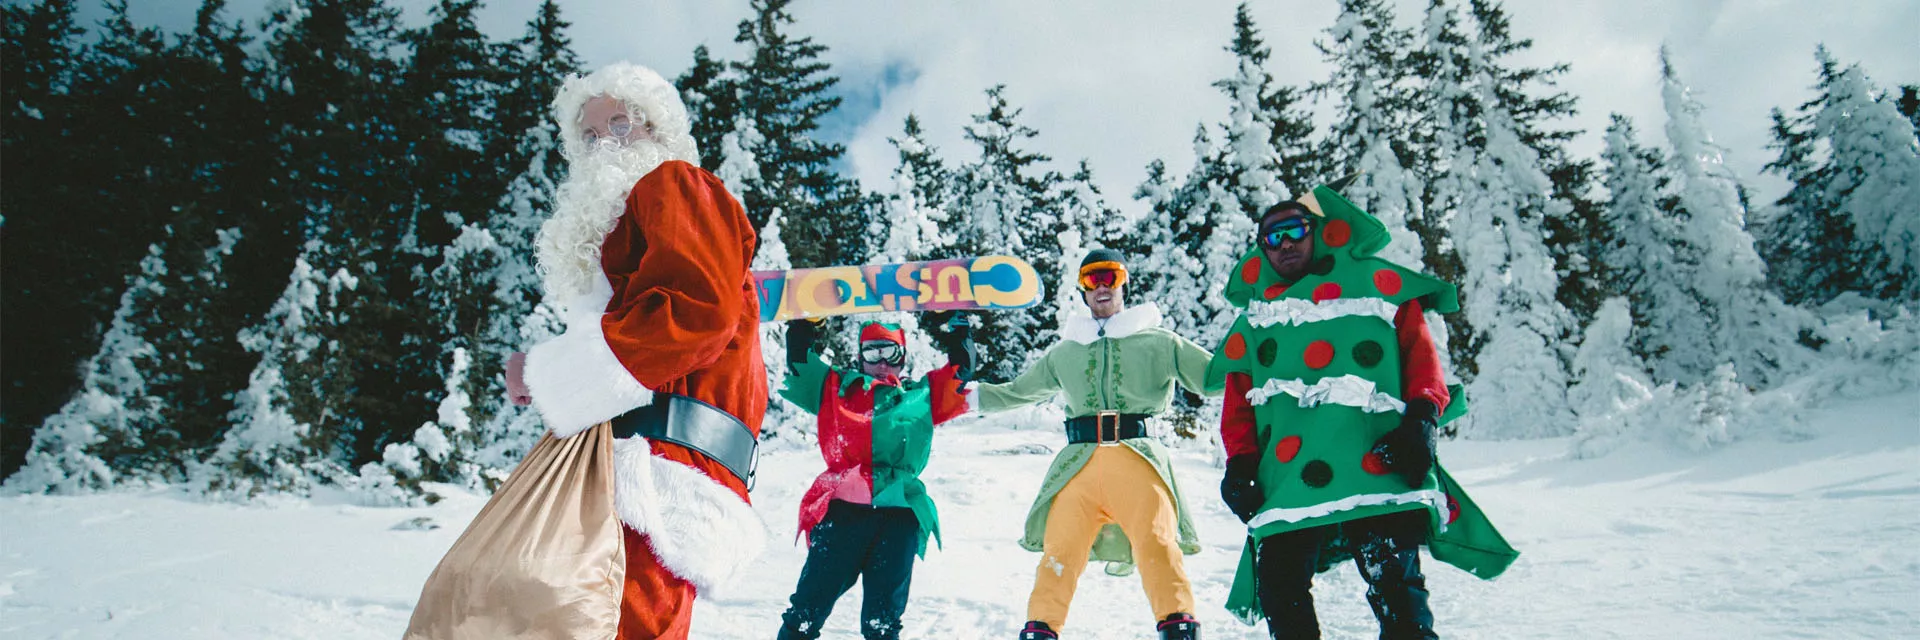 Your Christmas ski vacations